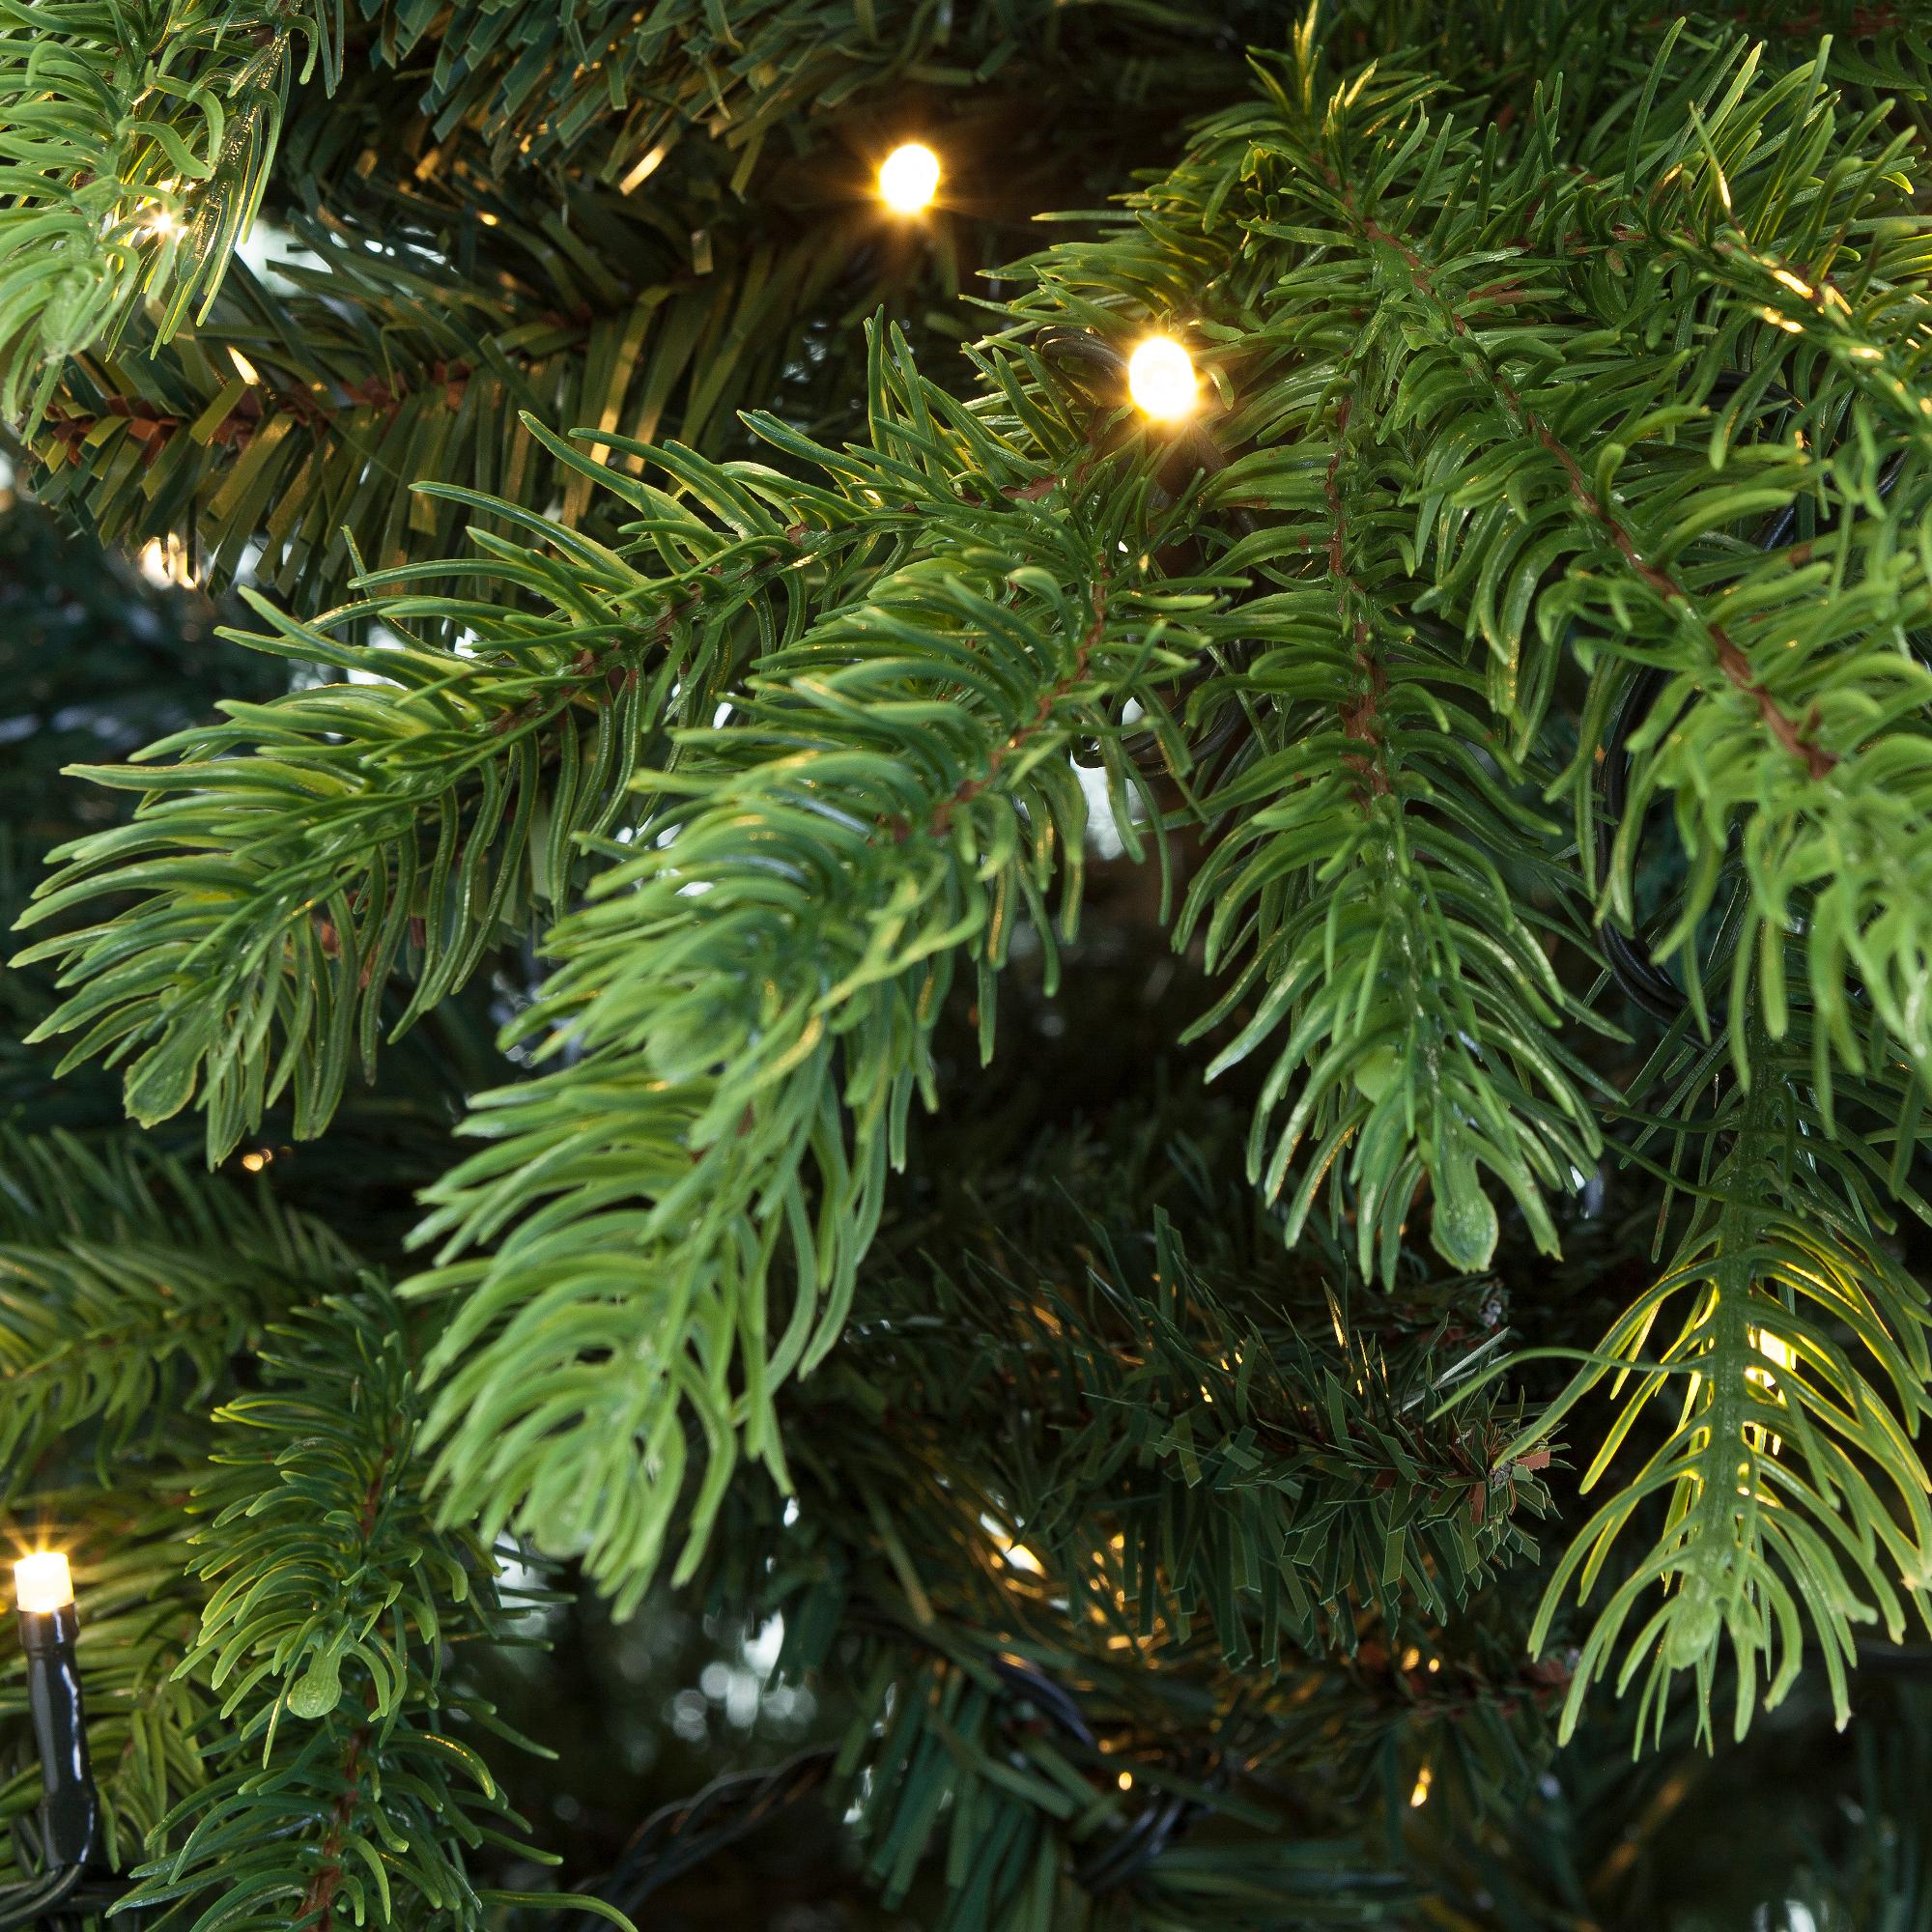 Premium Kerstboom Excellent Trees® LED Kalmar 150 cm met verlichting - 210 Lampjes